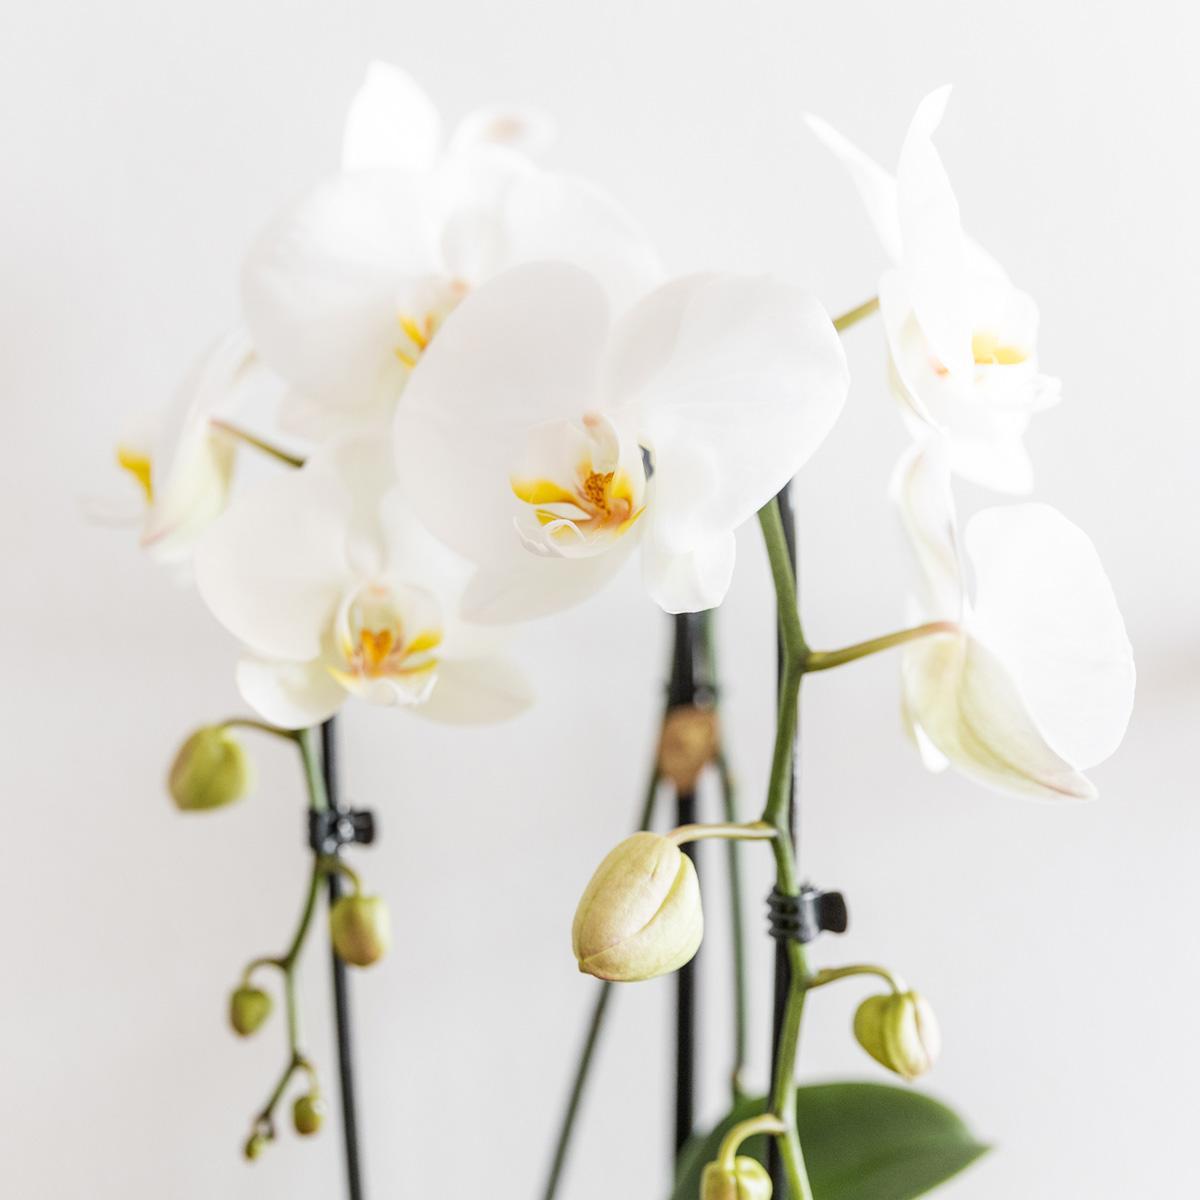 Weiße Phalaenopsis-Niagara-Fall-Orchidee und ihr goldener Blumentopf - blühende Zimmerpflanze